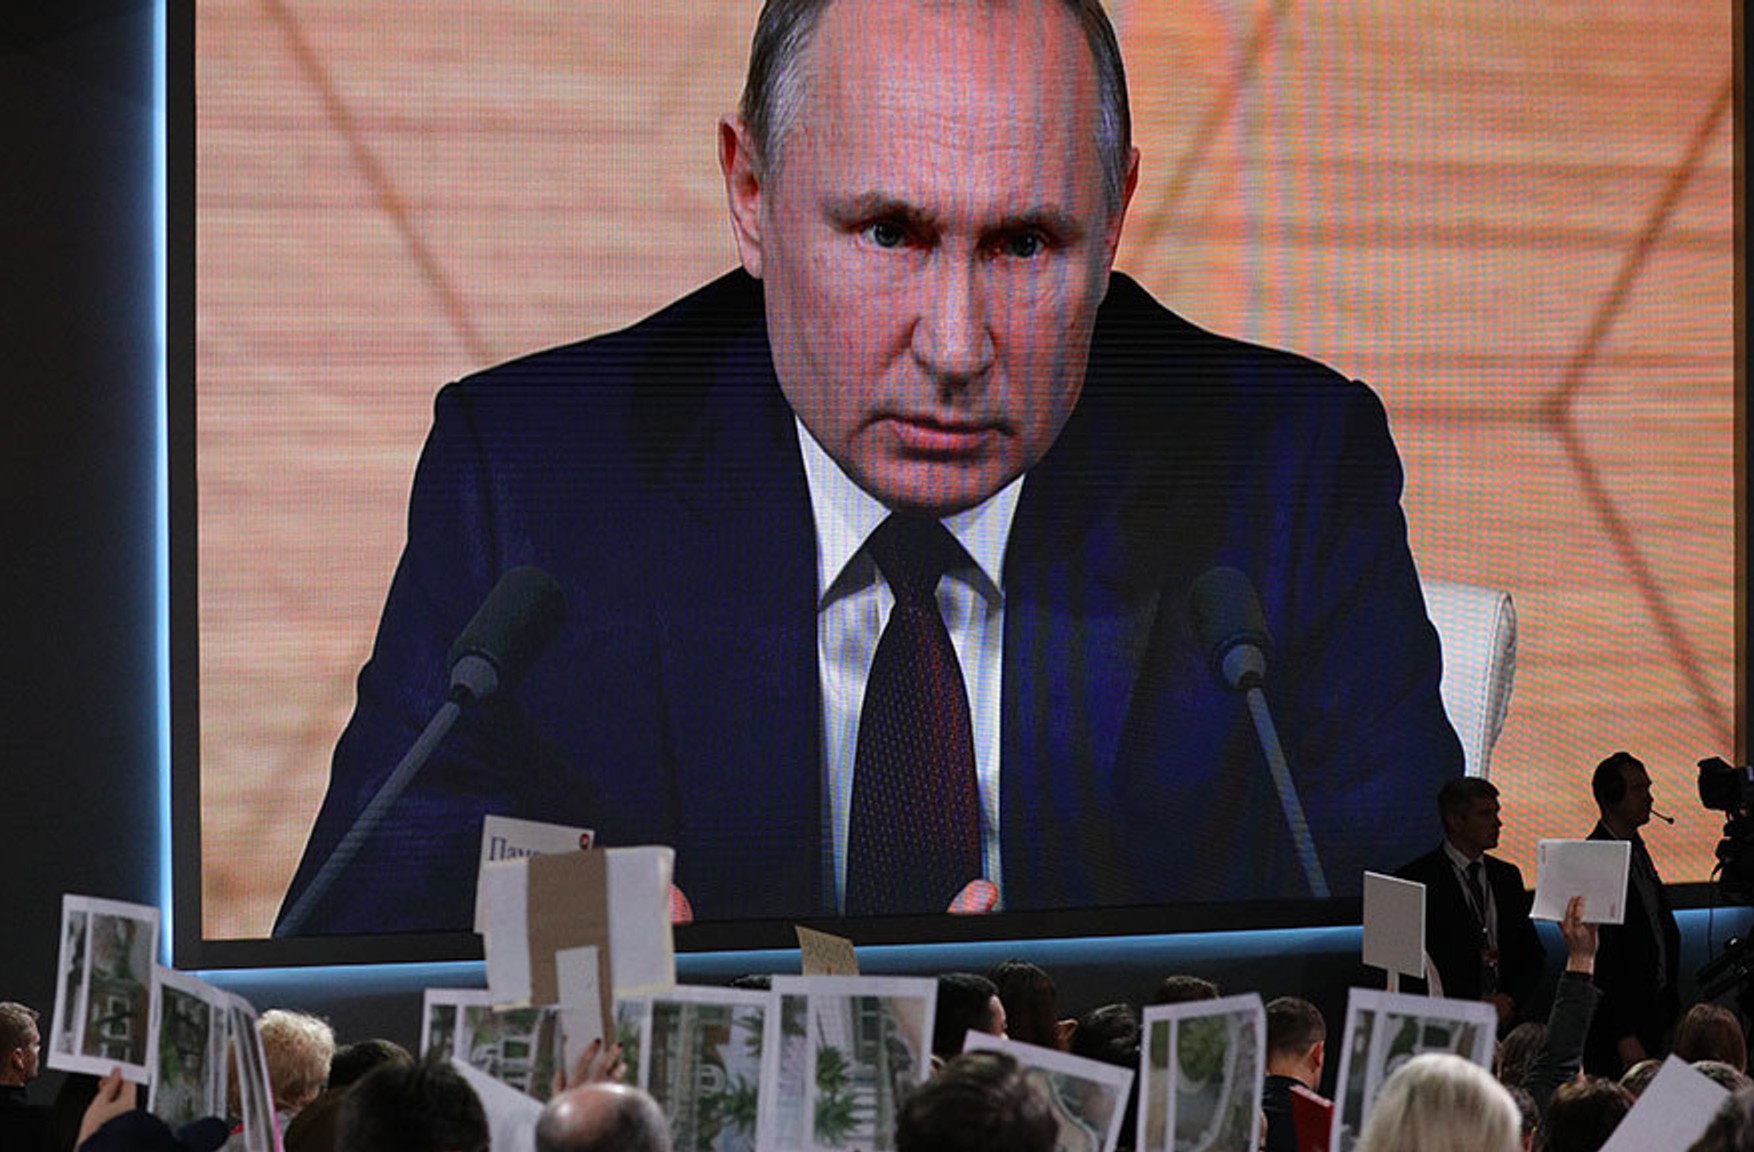 Велика прес-конференція Путіна пройде 17 грудня по відеозв'язку